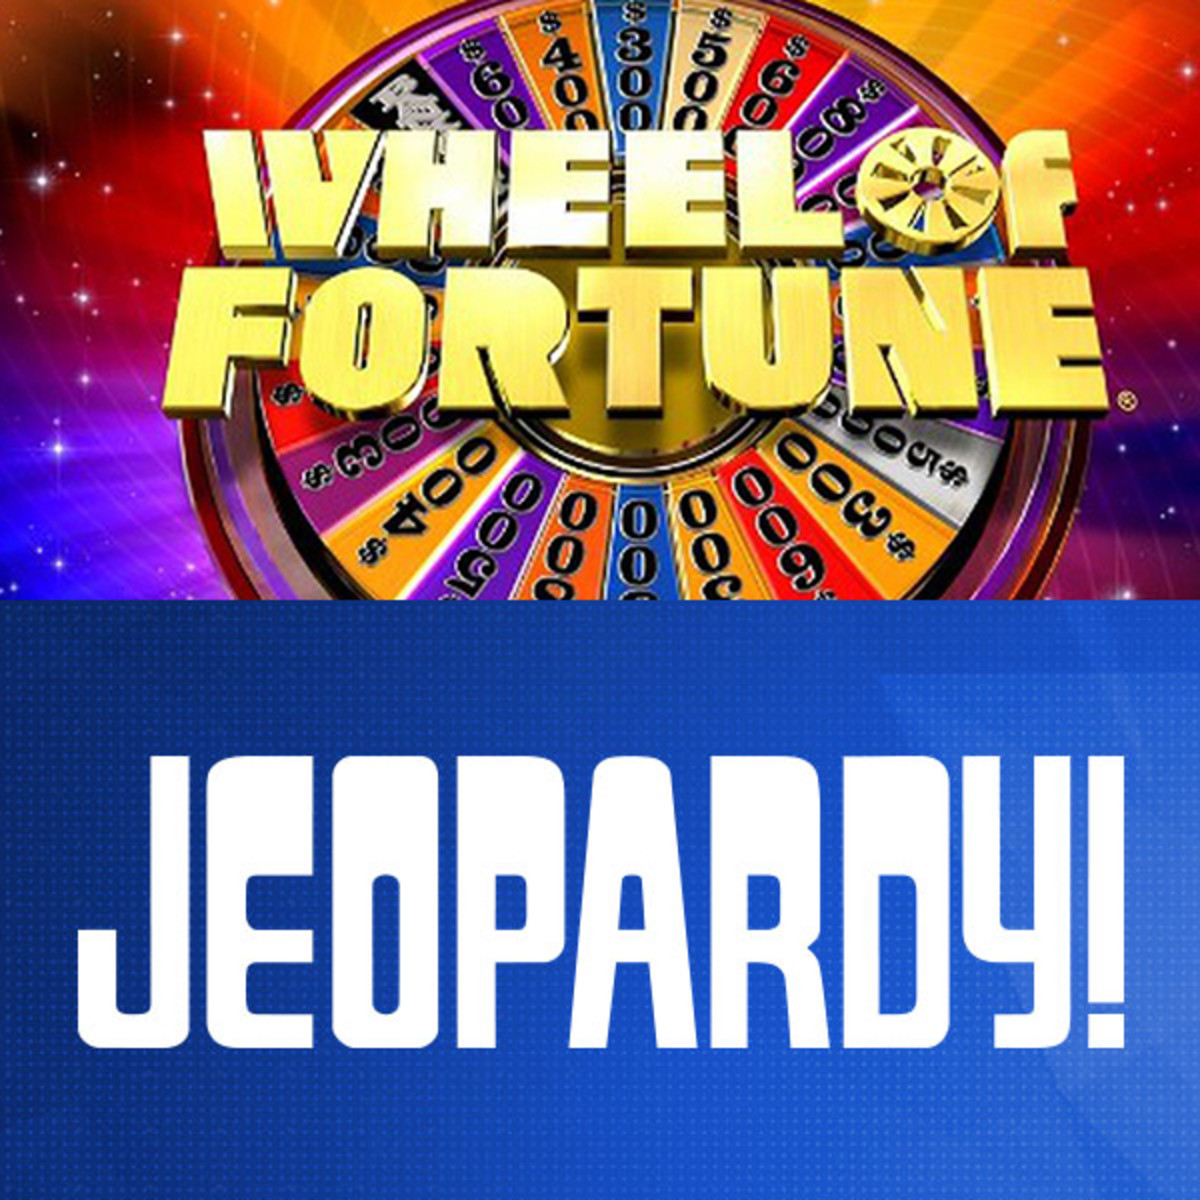 Wheel of Fortune, Jeopardy